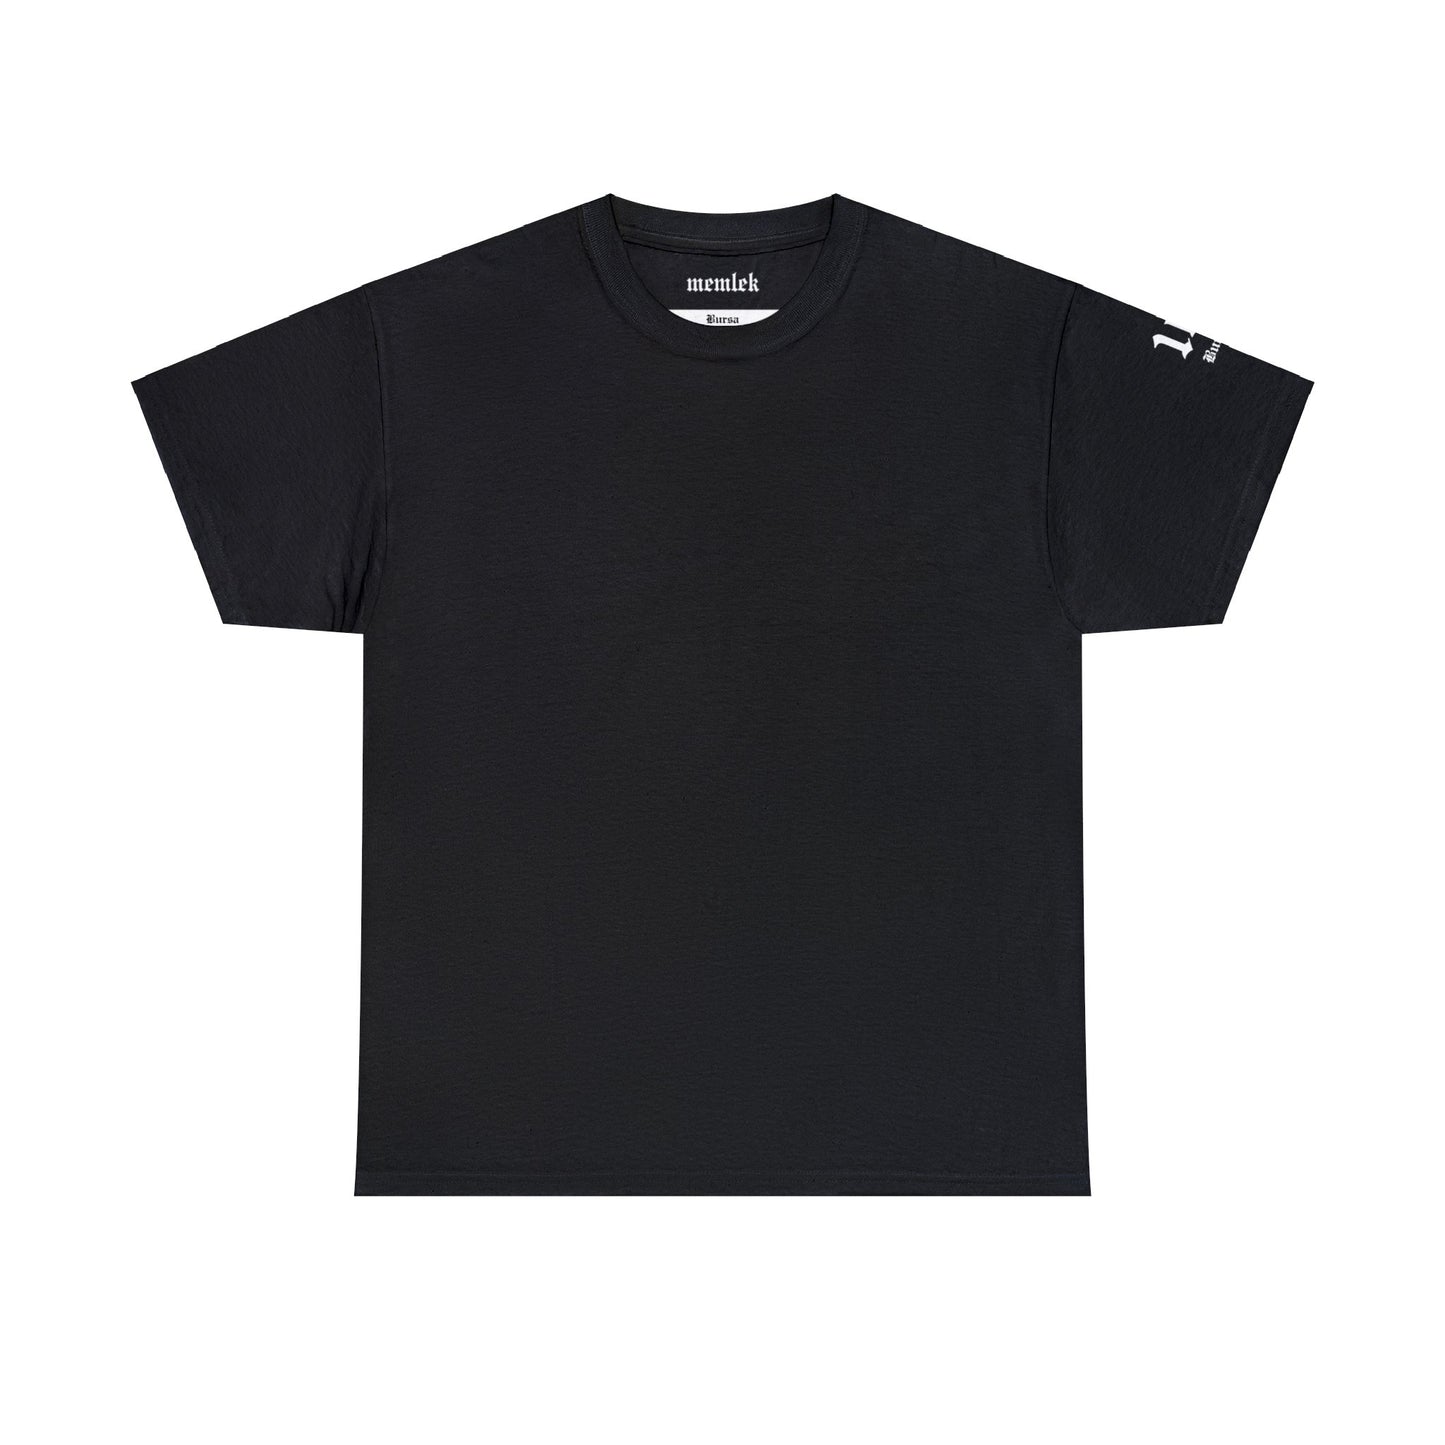 Şehirim - 16 Bursa - T-Shirt - Back Print - Black